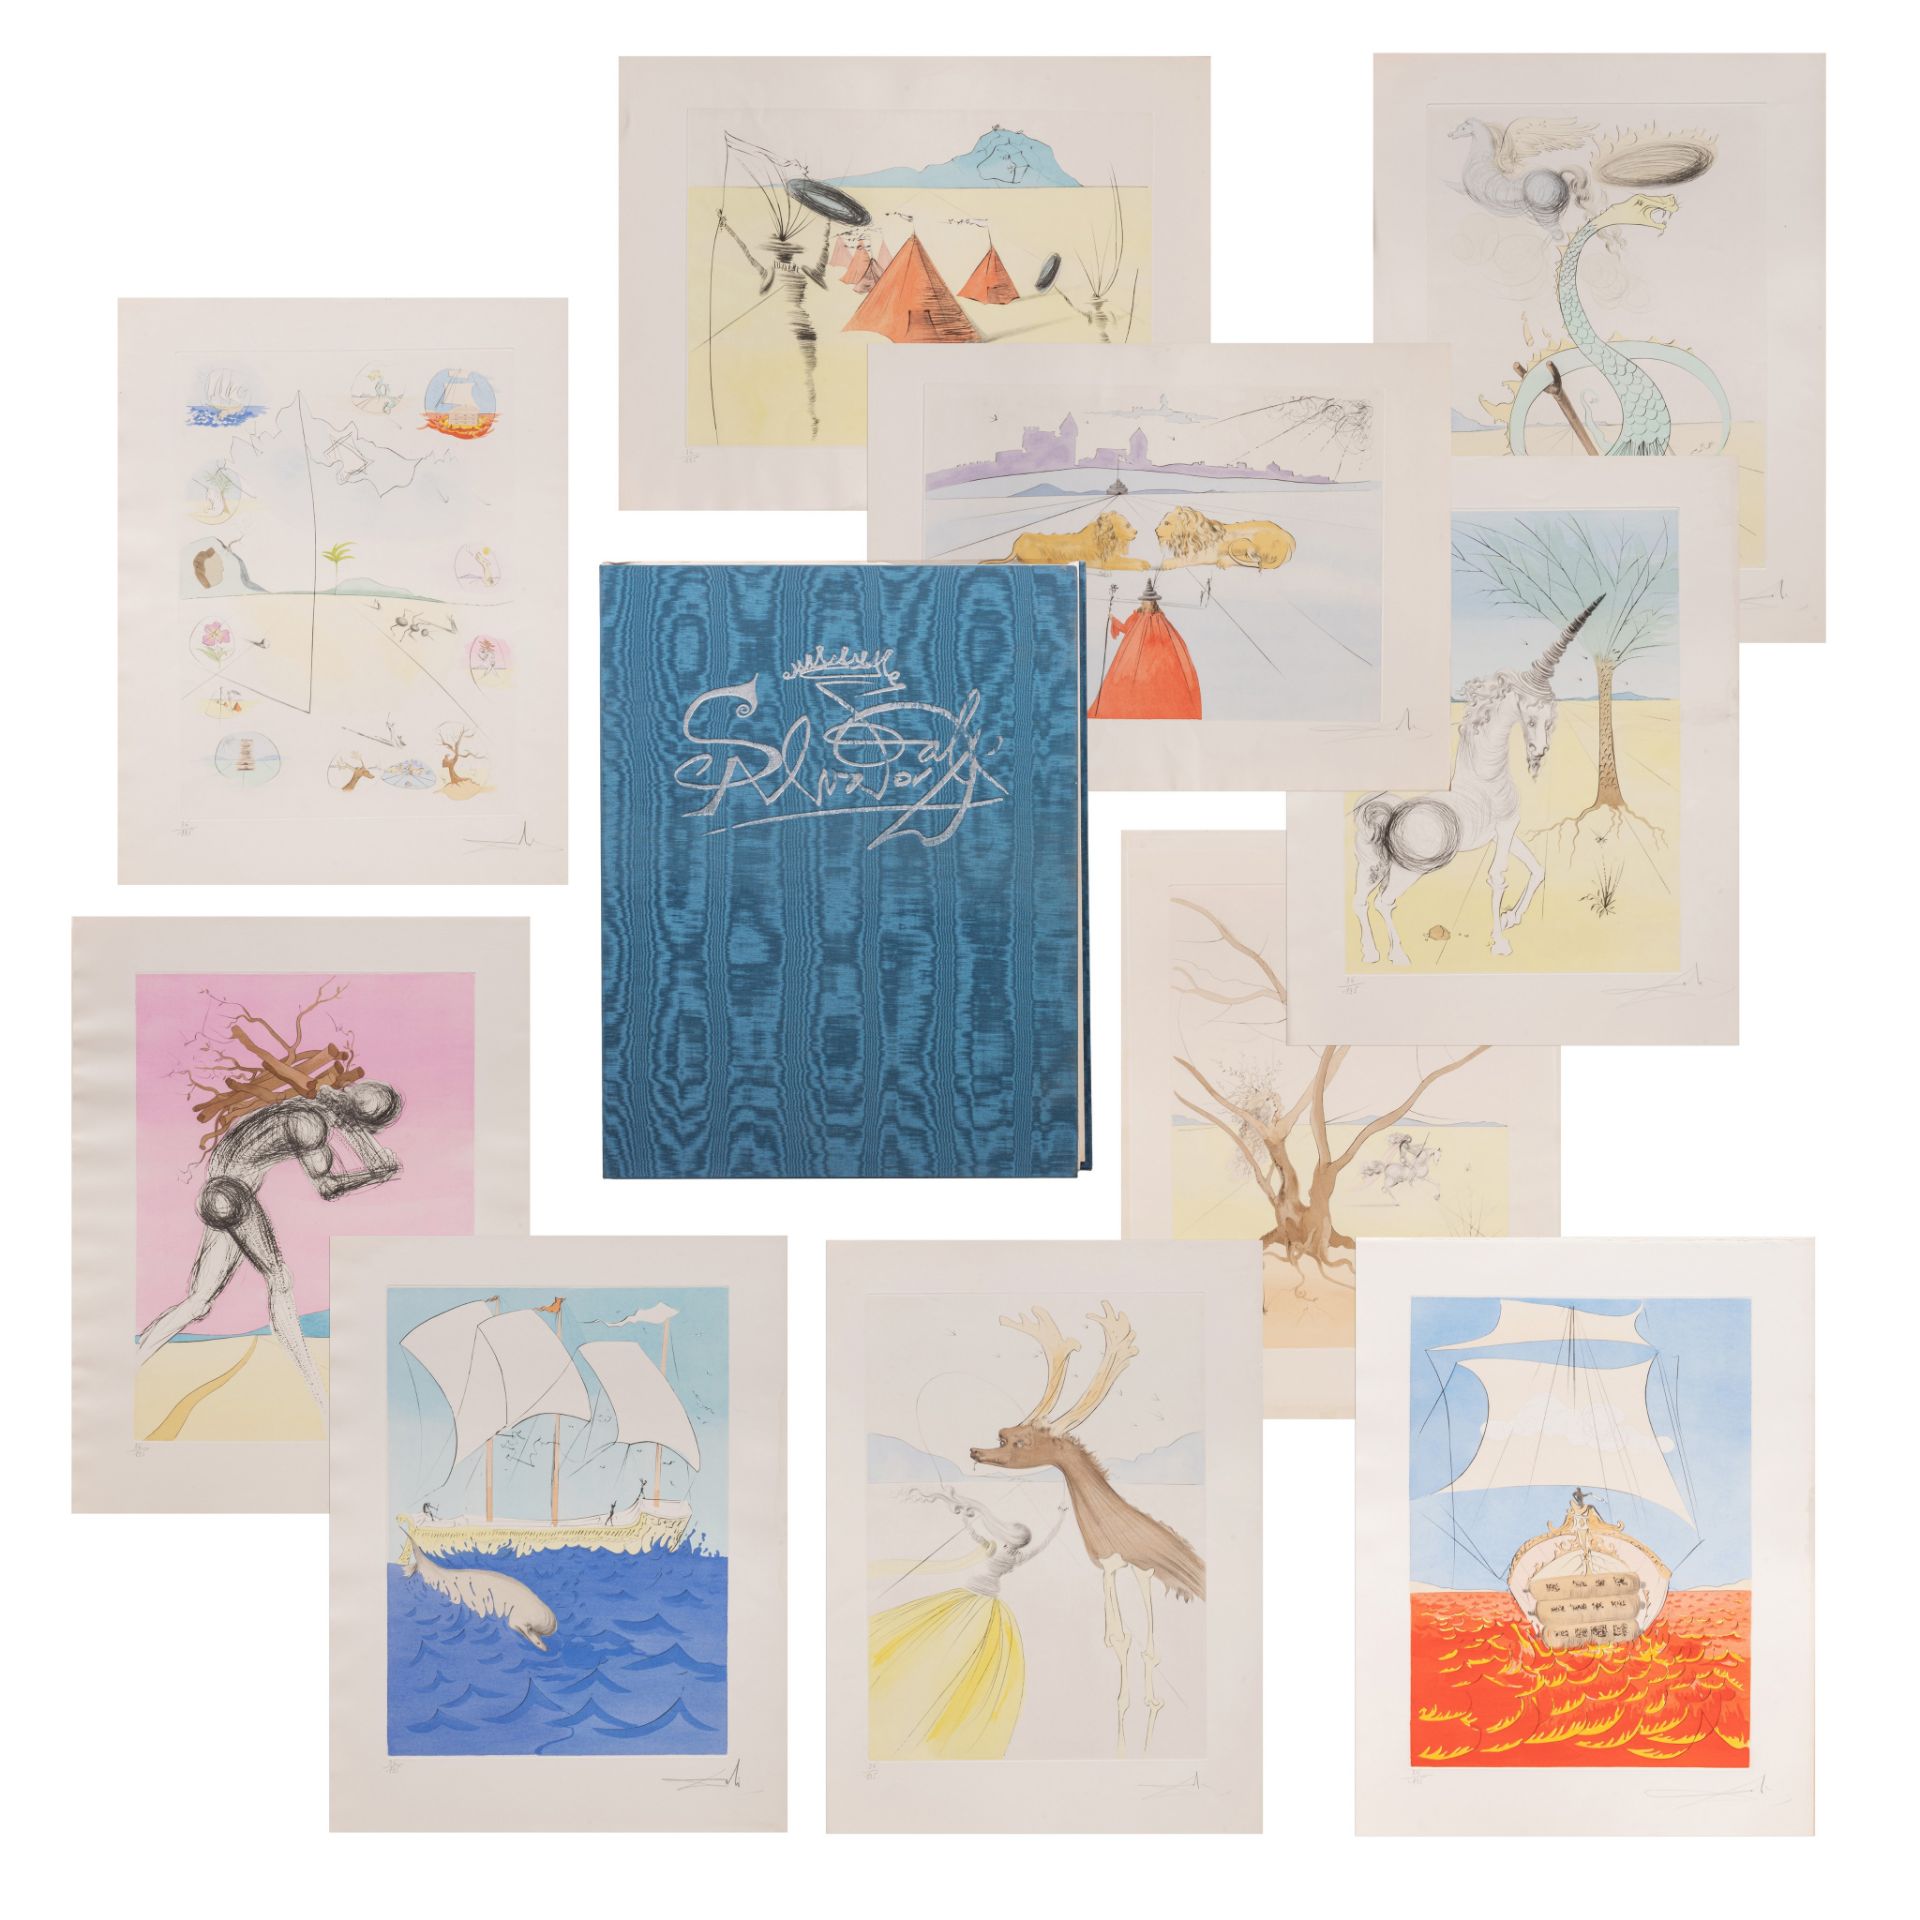 Salvador Dali (1904-1989), 'Les douze tribus d'Isra'l', 1973, ten colour etchings on Arches paper, N